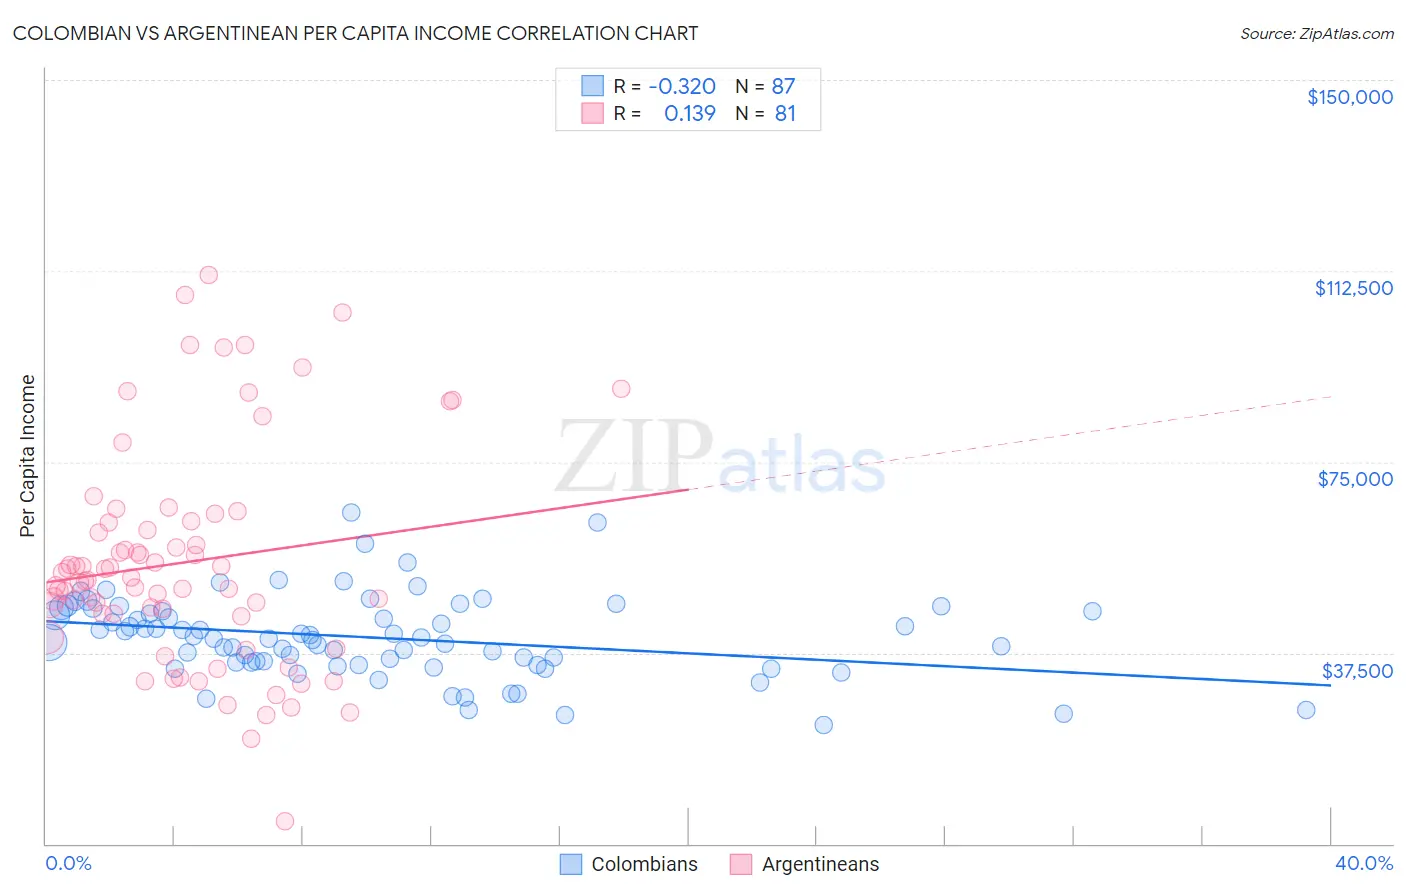 Colombian vs Argentinean Per Capita Income